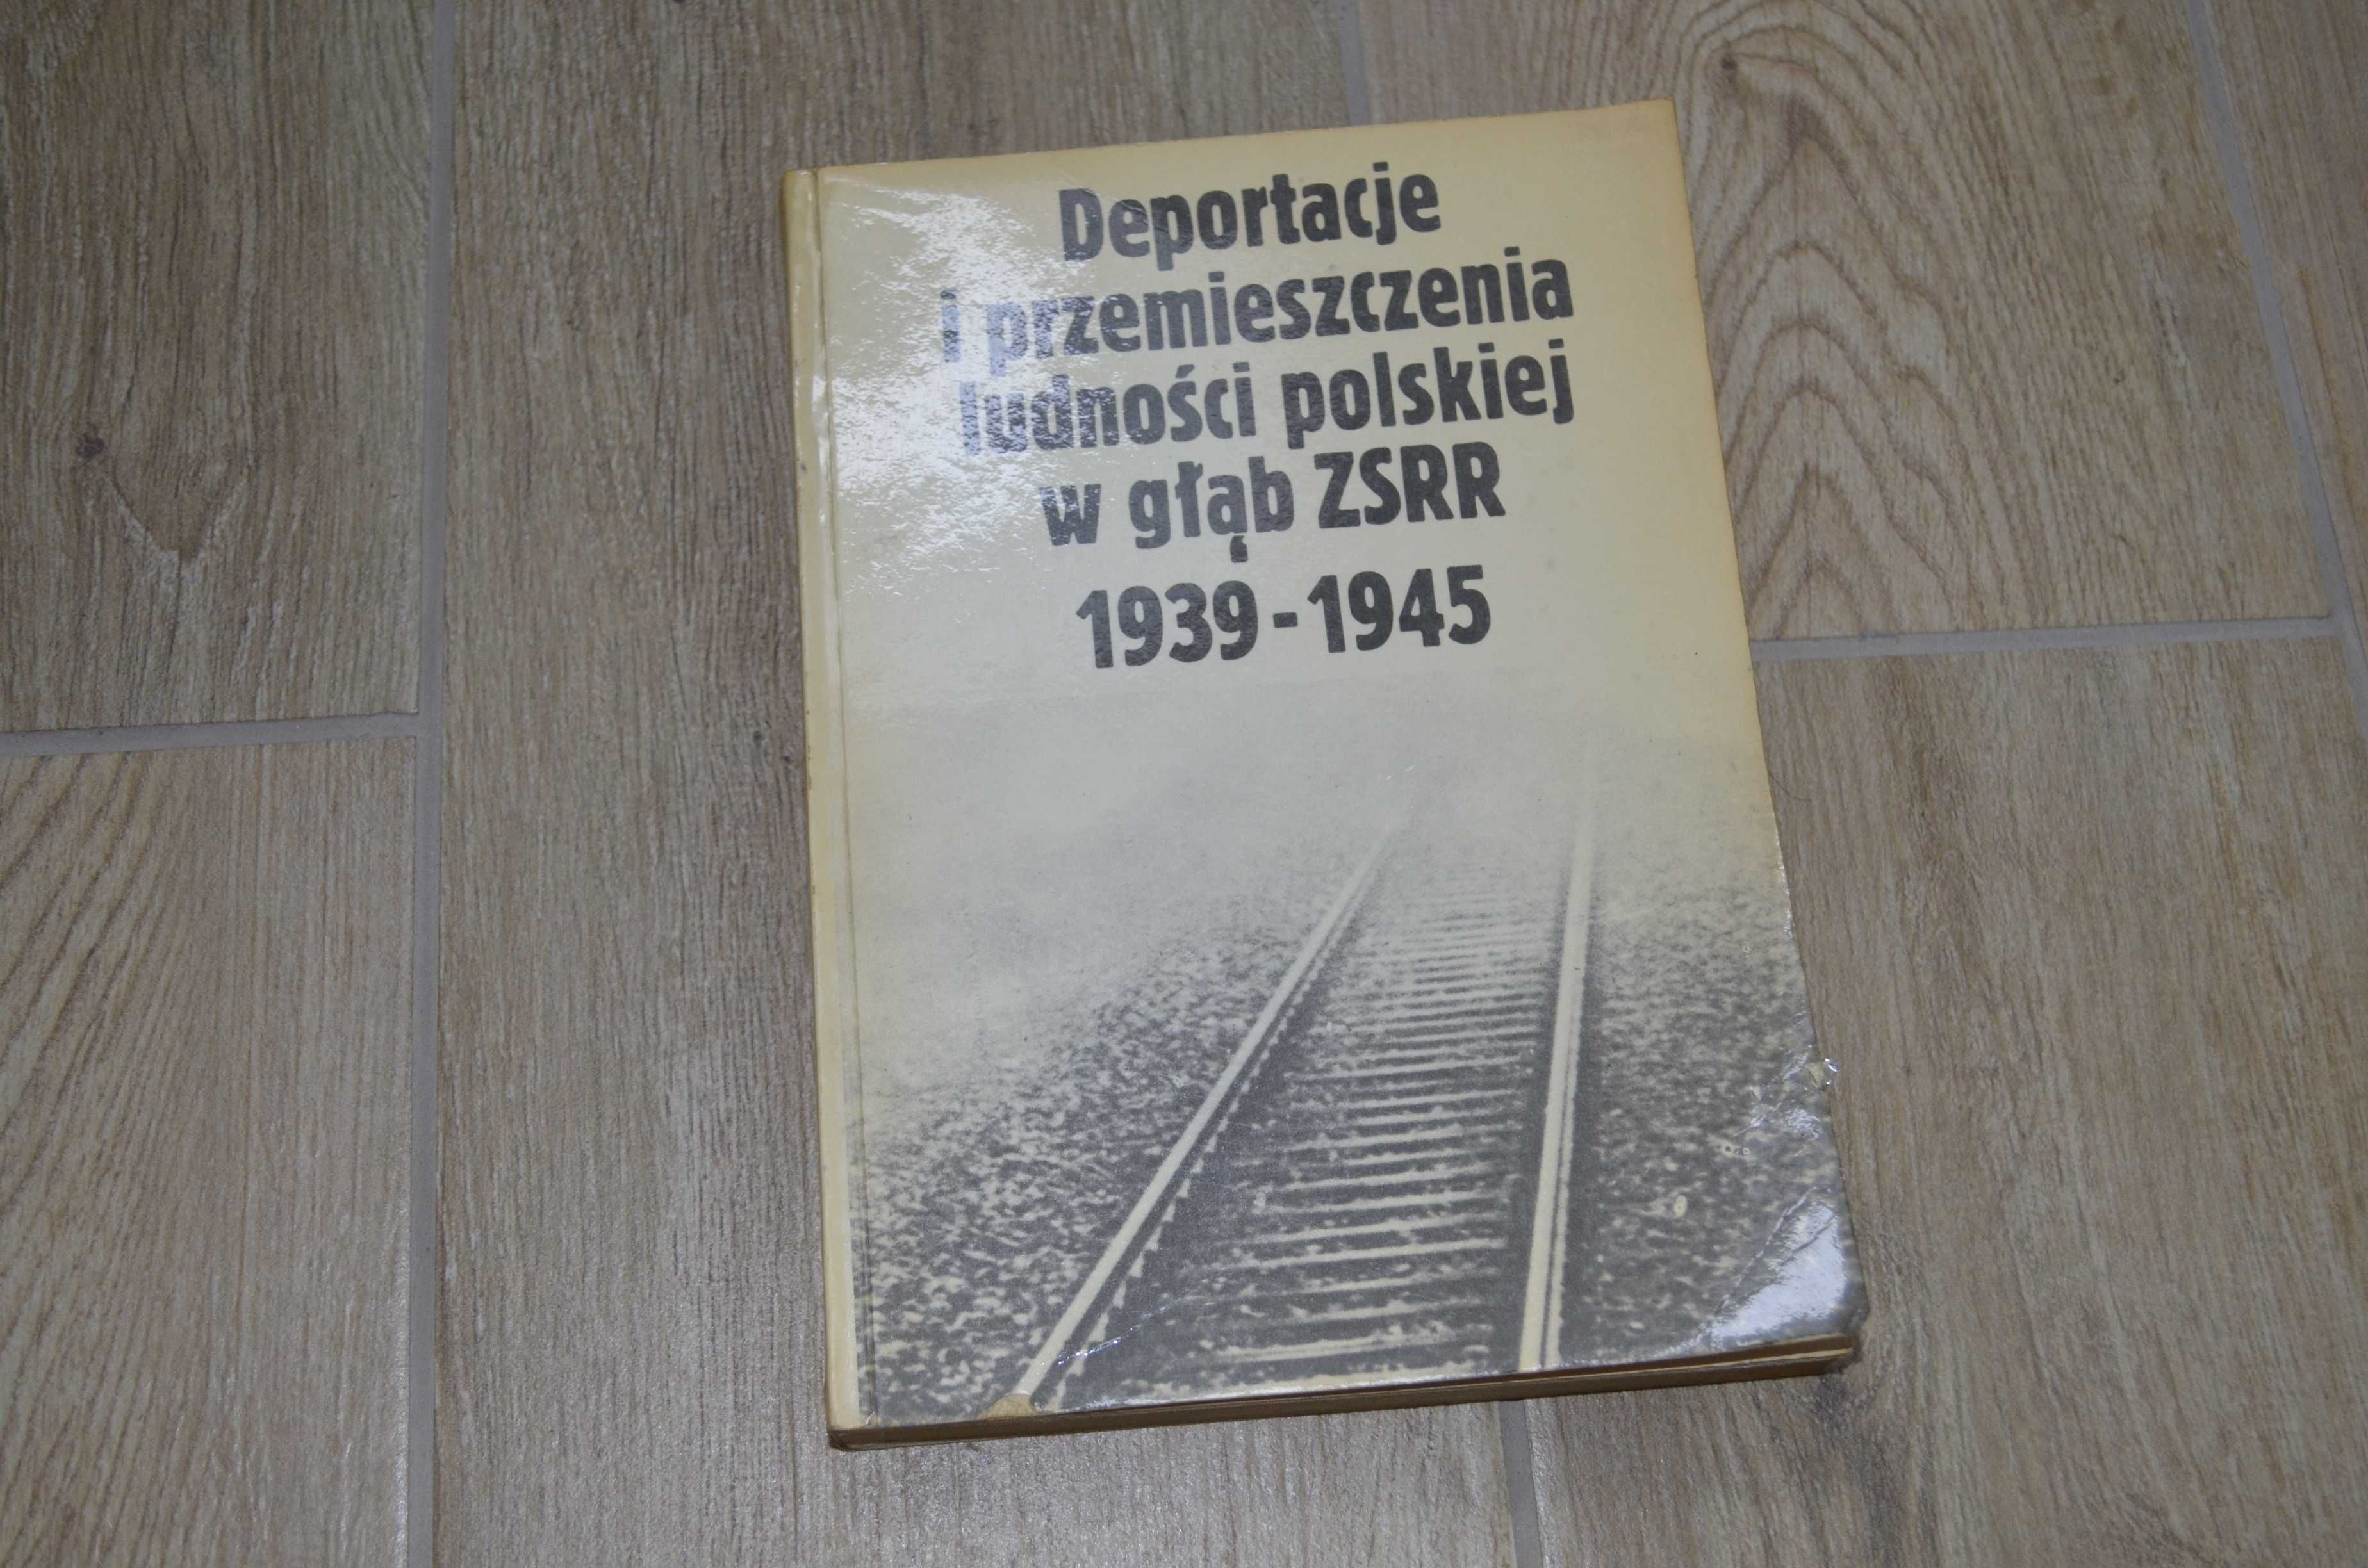 Deportacje i przemieszczenia ludności polskiej w głąb ZSRR 1939 -1945.